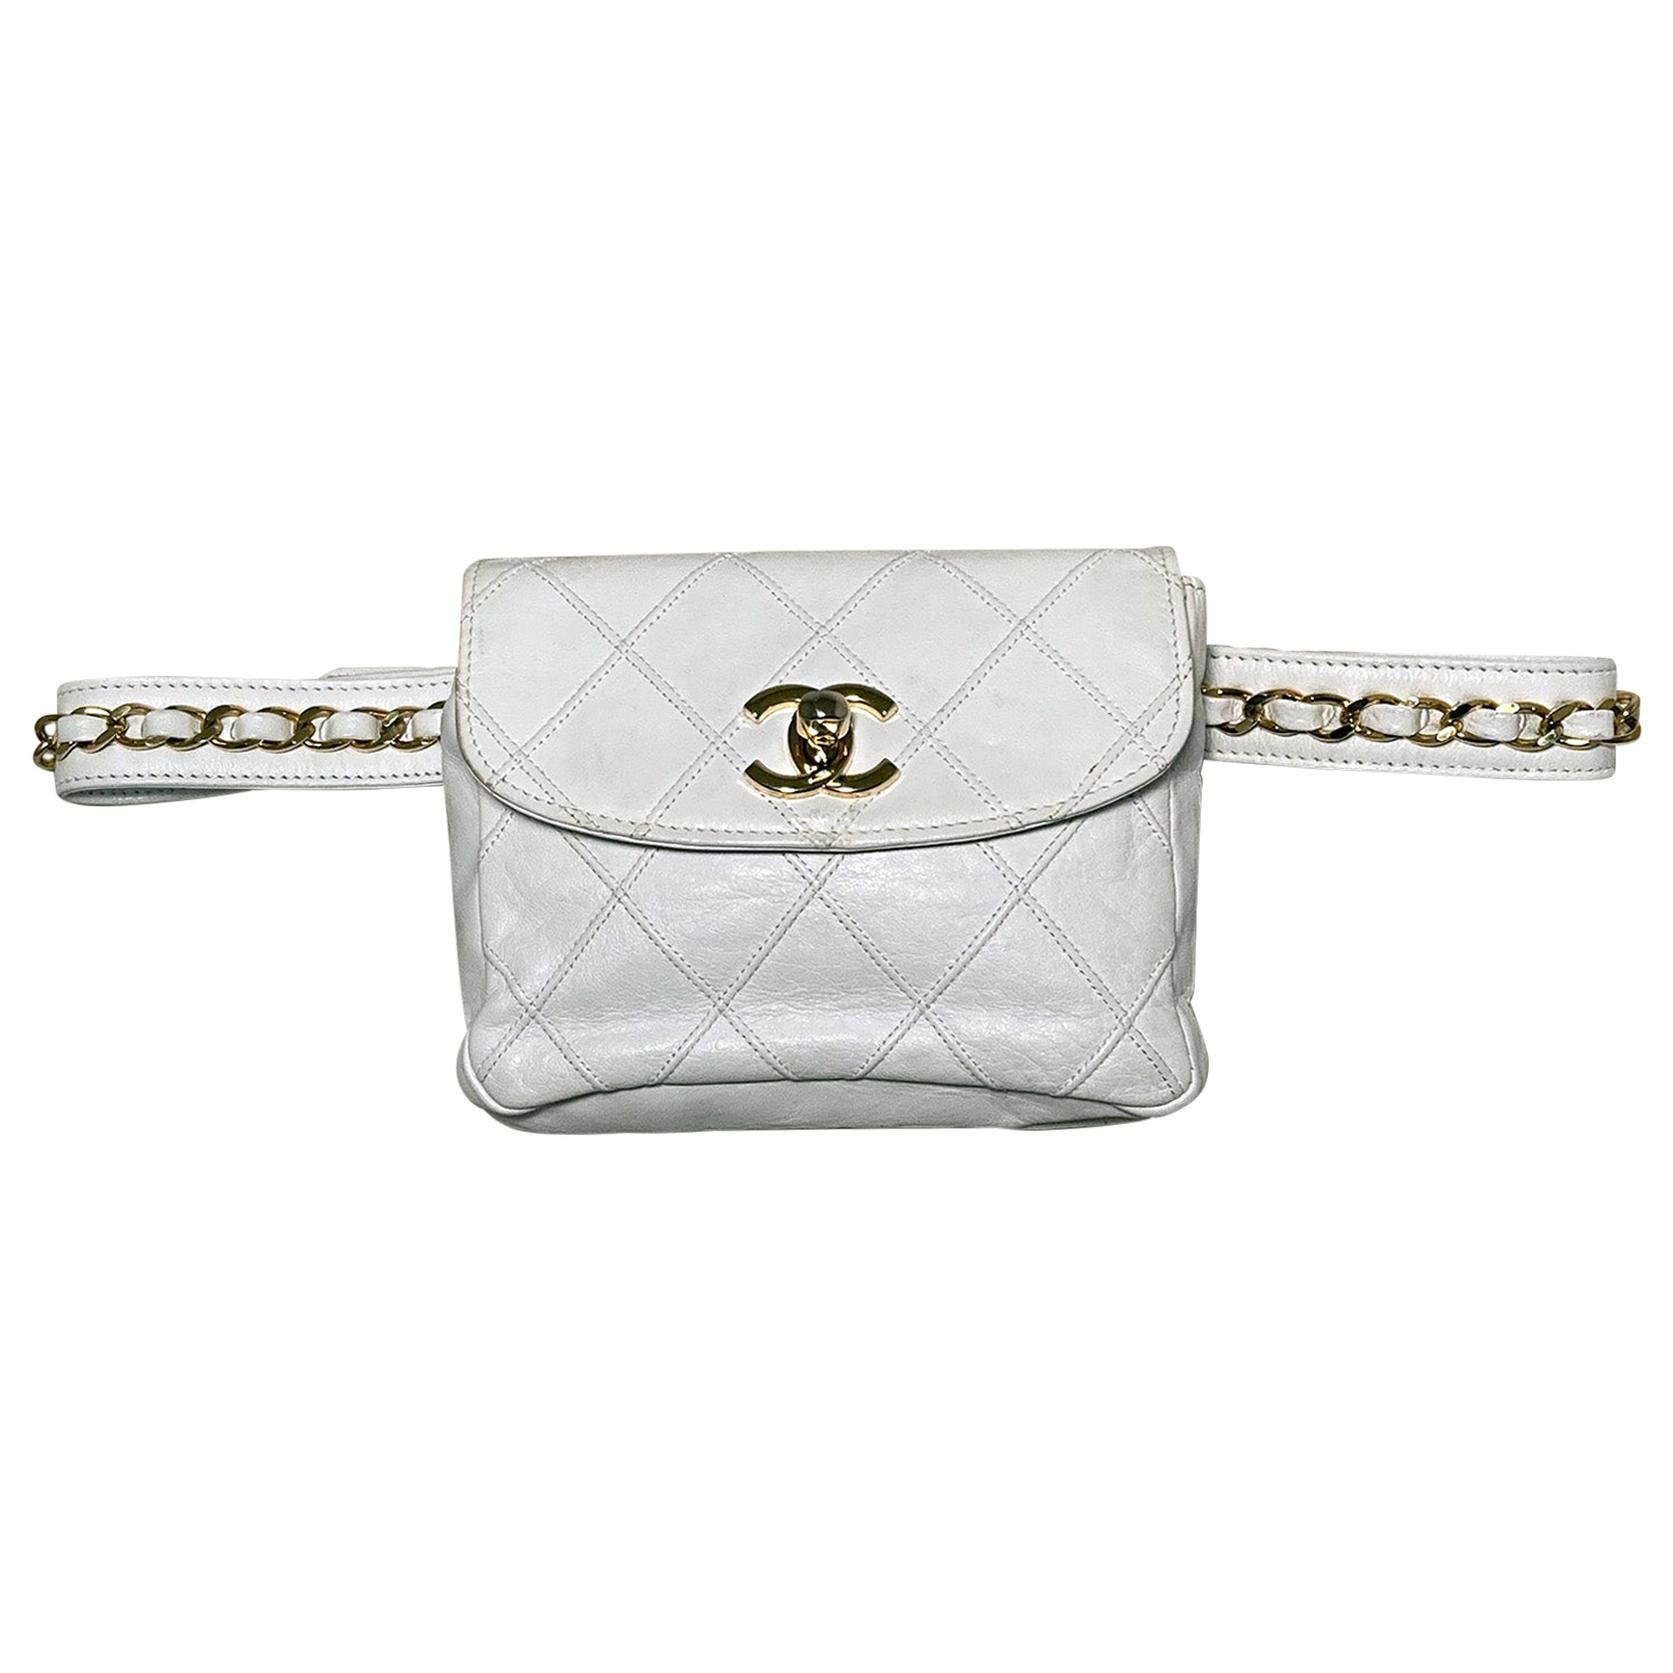 Chanel Vintage White Leather Belt Bag